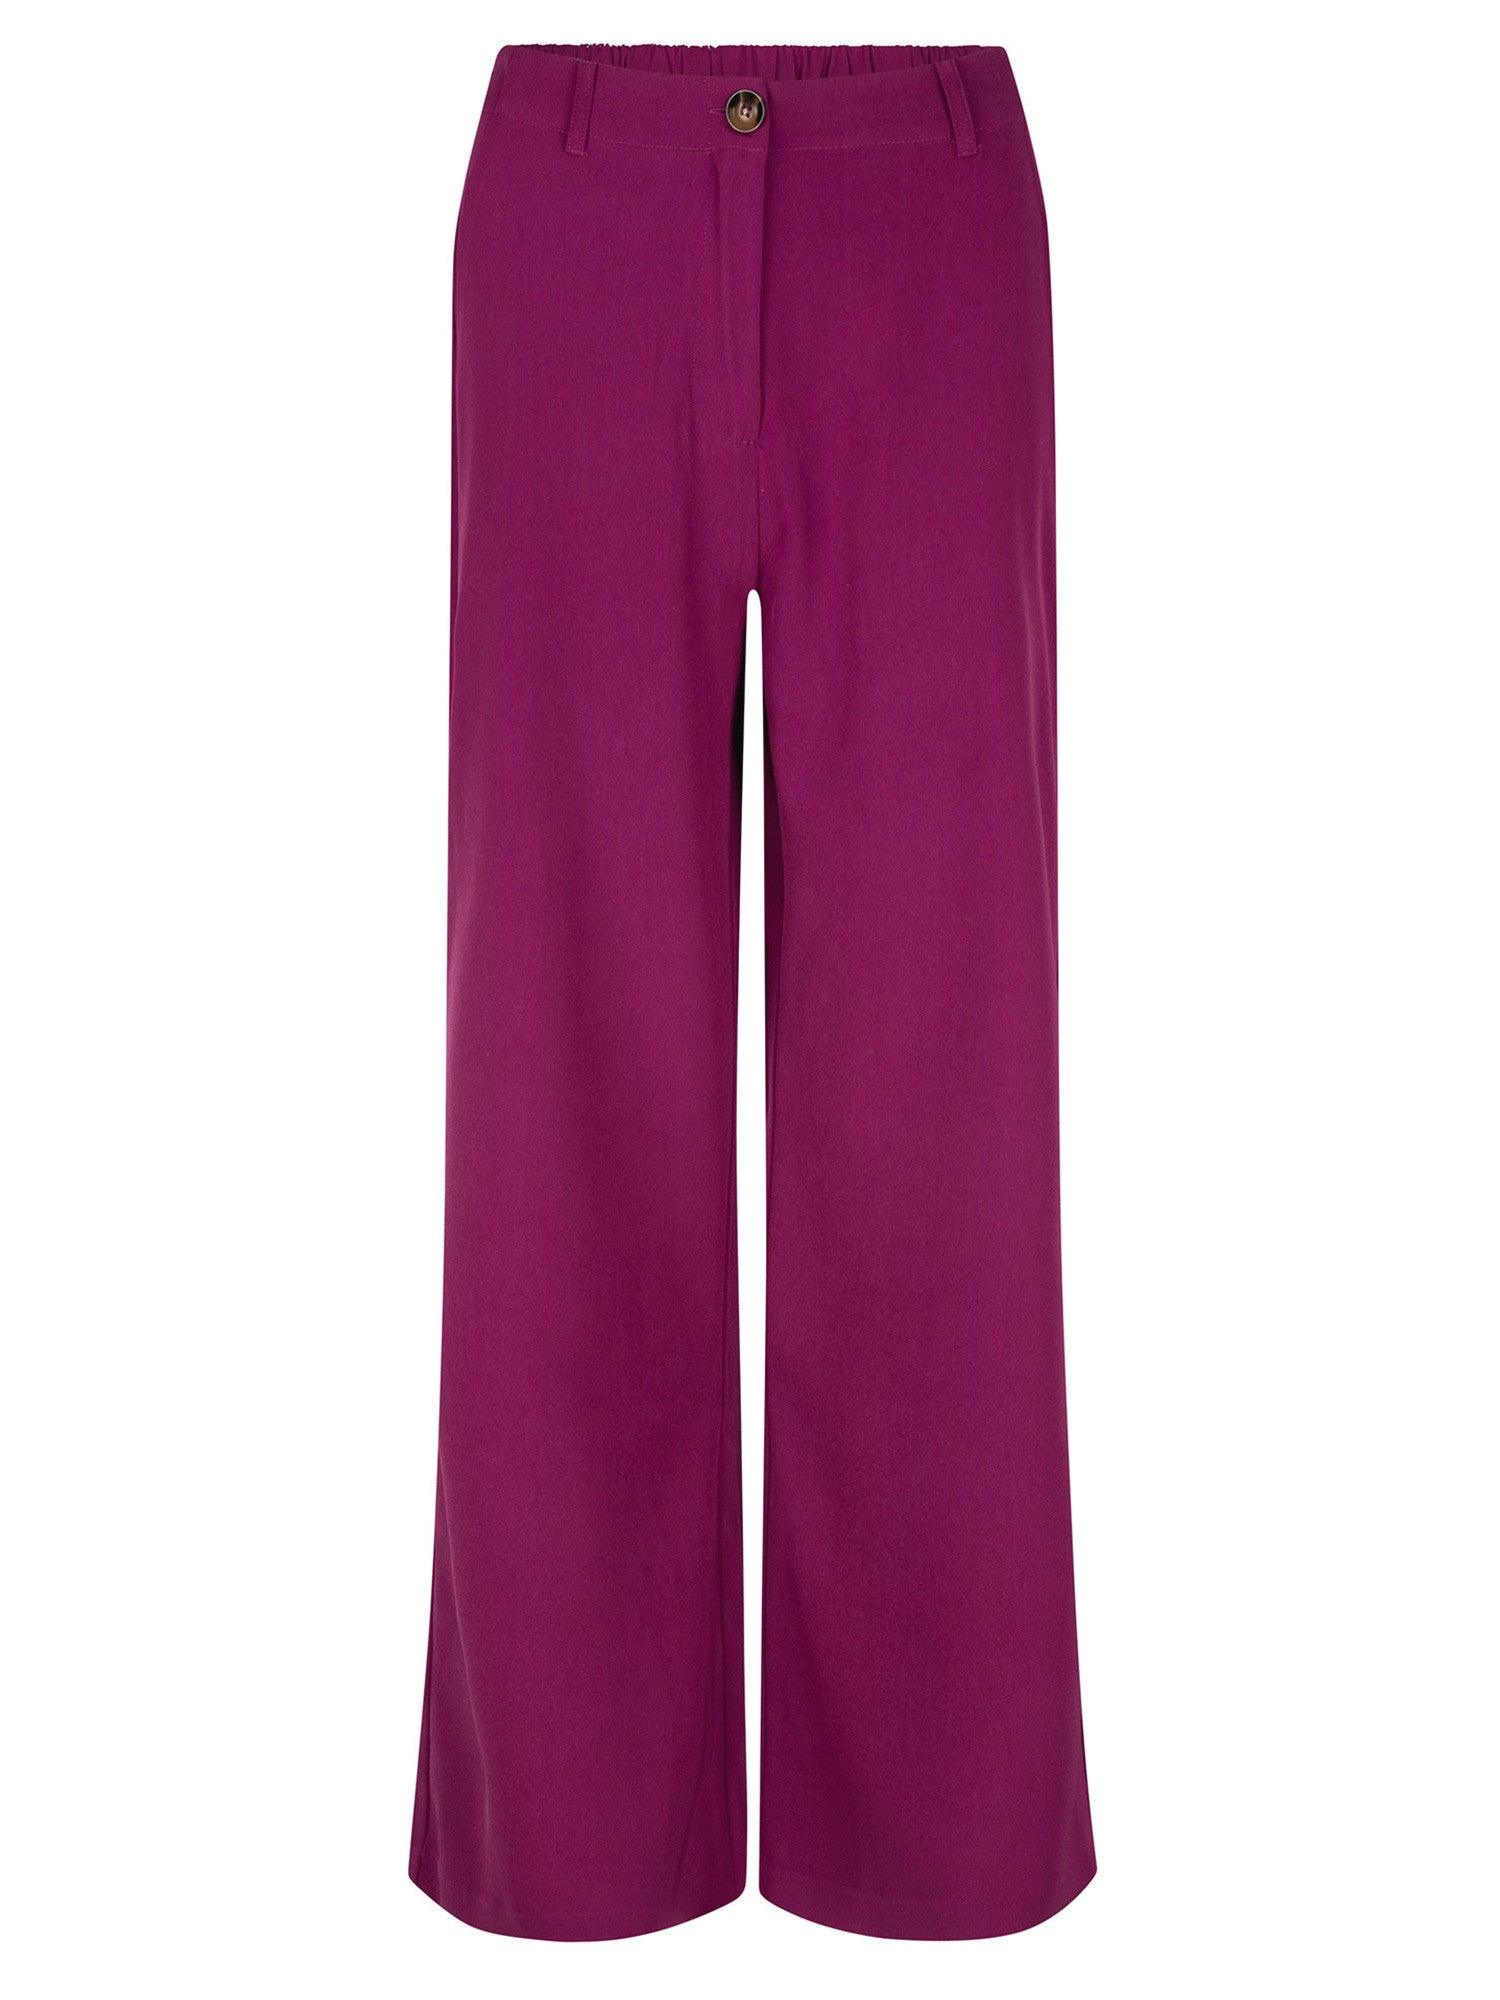 Ydence Purple wide leg solange trousers - Our Secret Boutique  Ydence